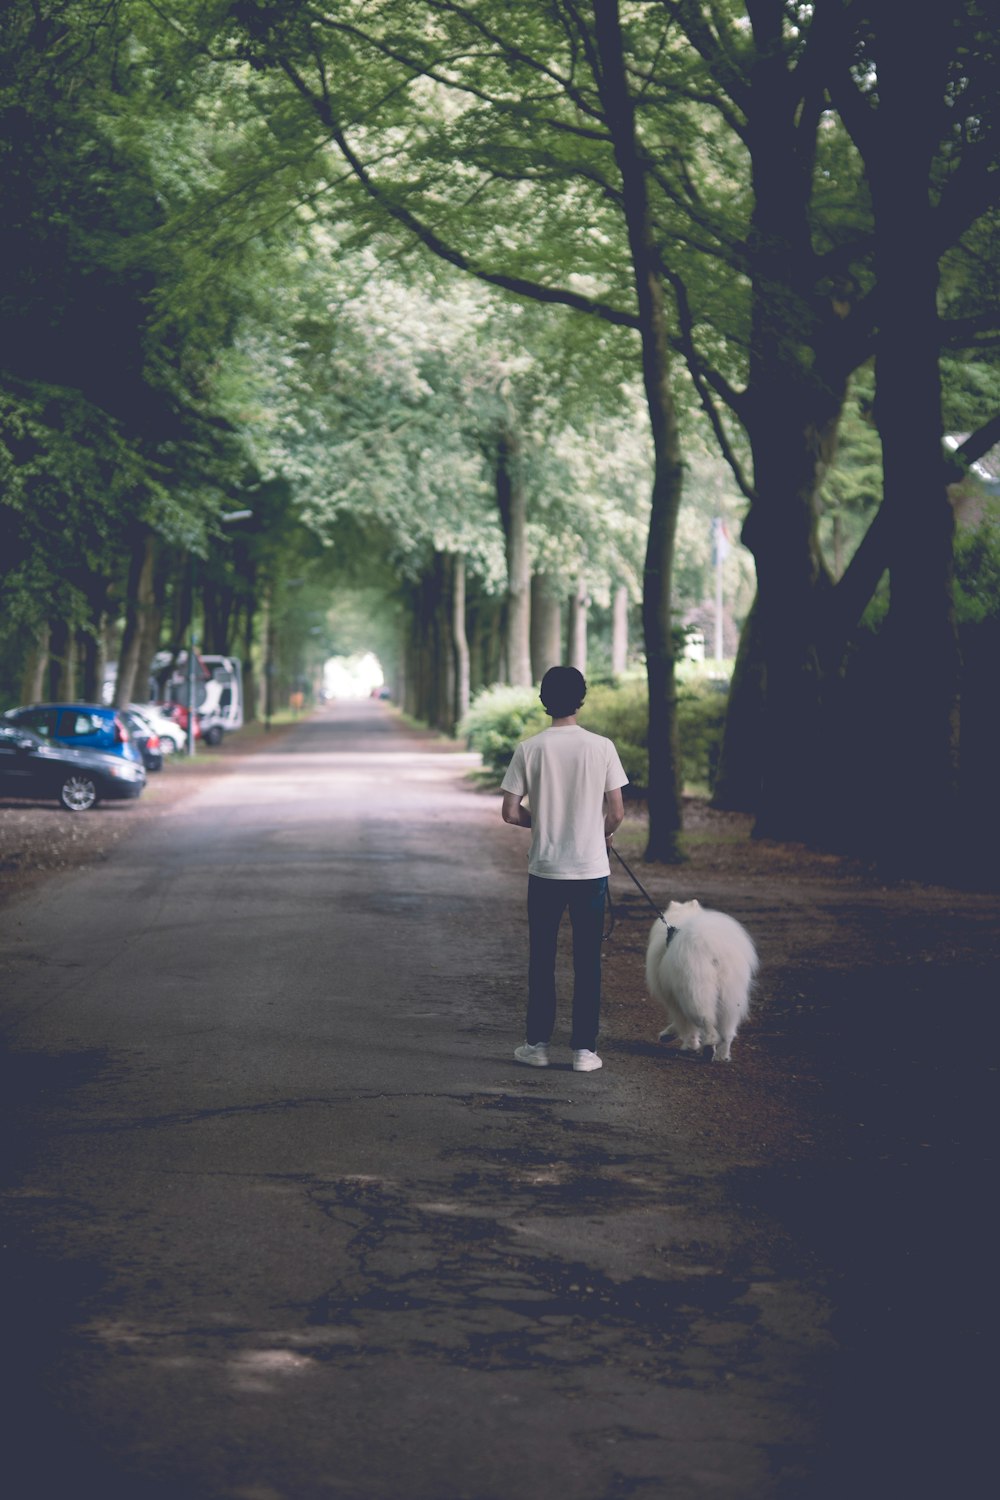 un homme promenant un chien dans une rue bordée d’arbres